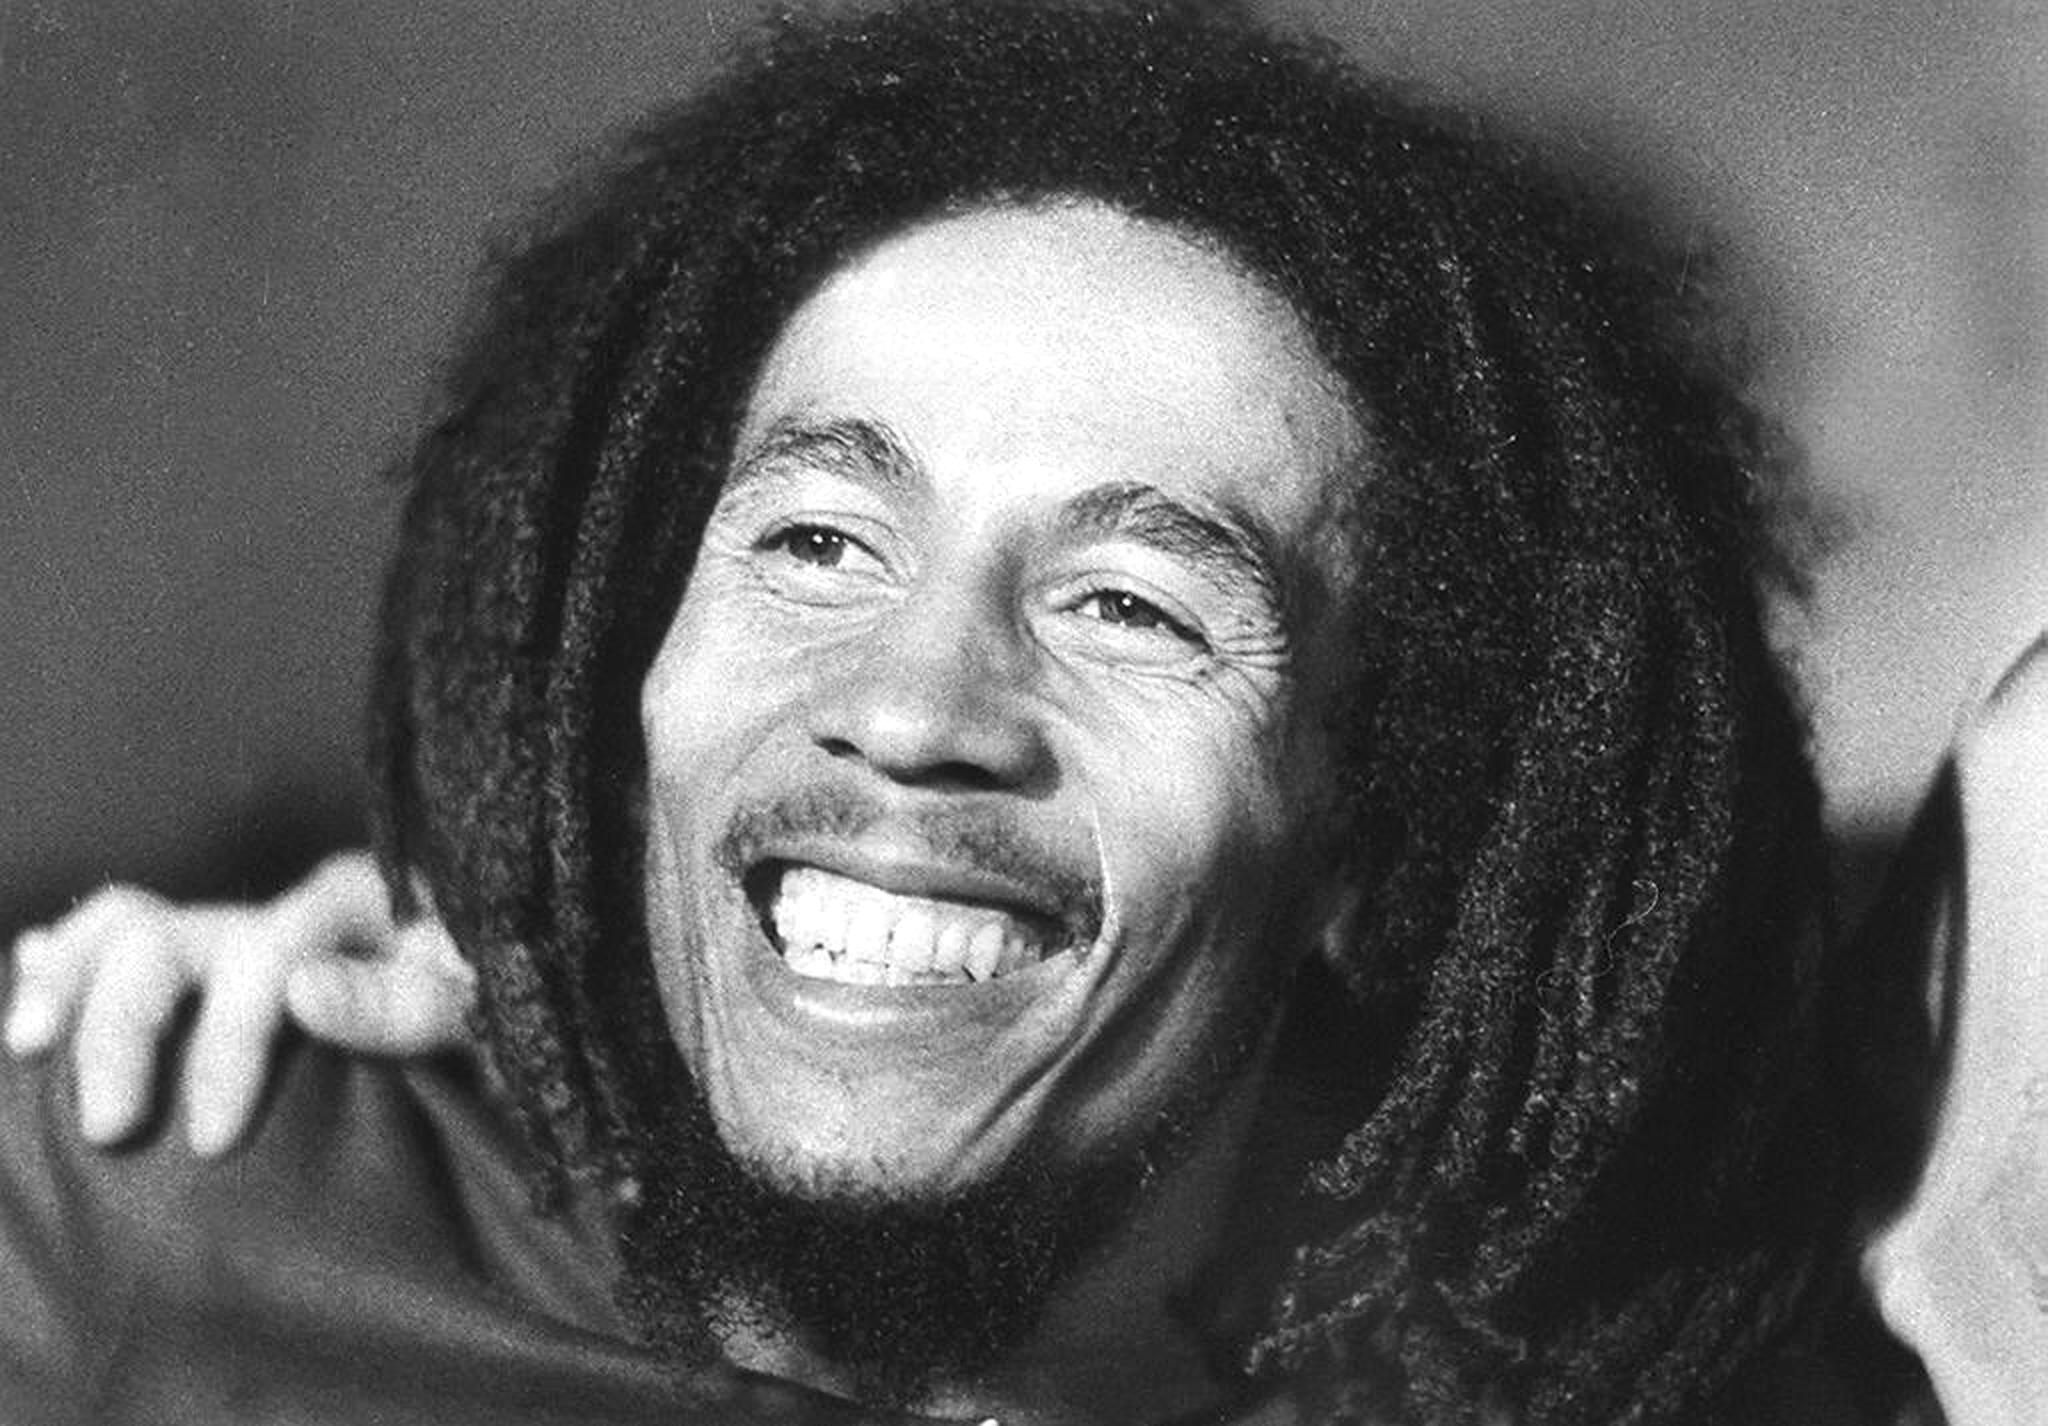 Bob Marley, originario de Jamaica, falleció el 11 de mayo de 1981 a causa de un cáncer. (Foto Prensa Libre: Hemeroteca PL)
